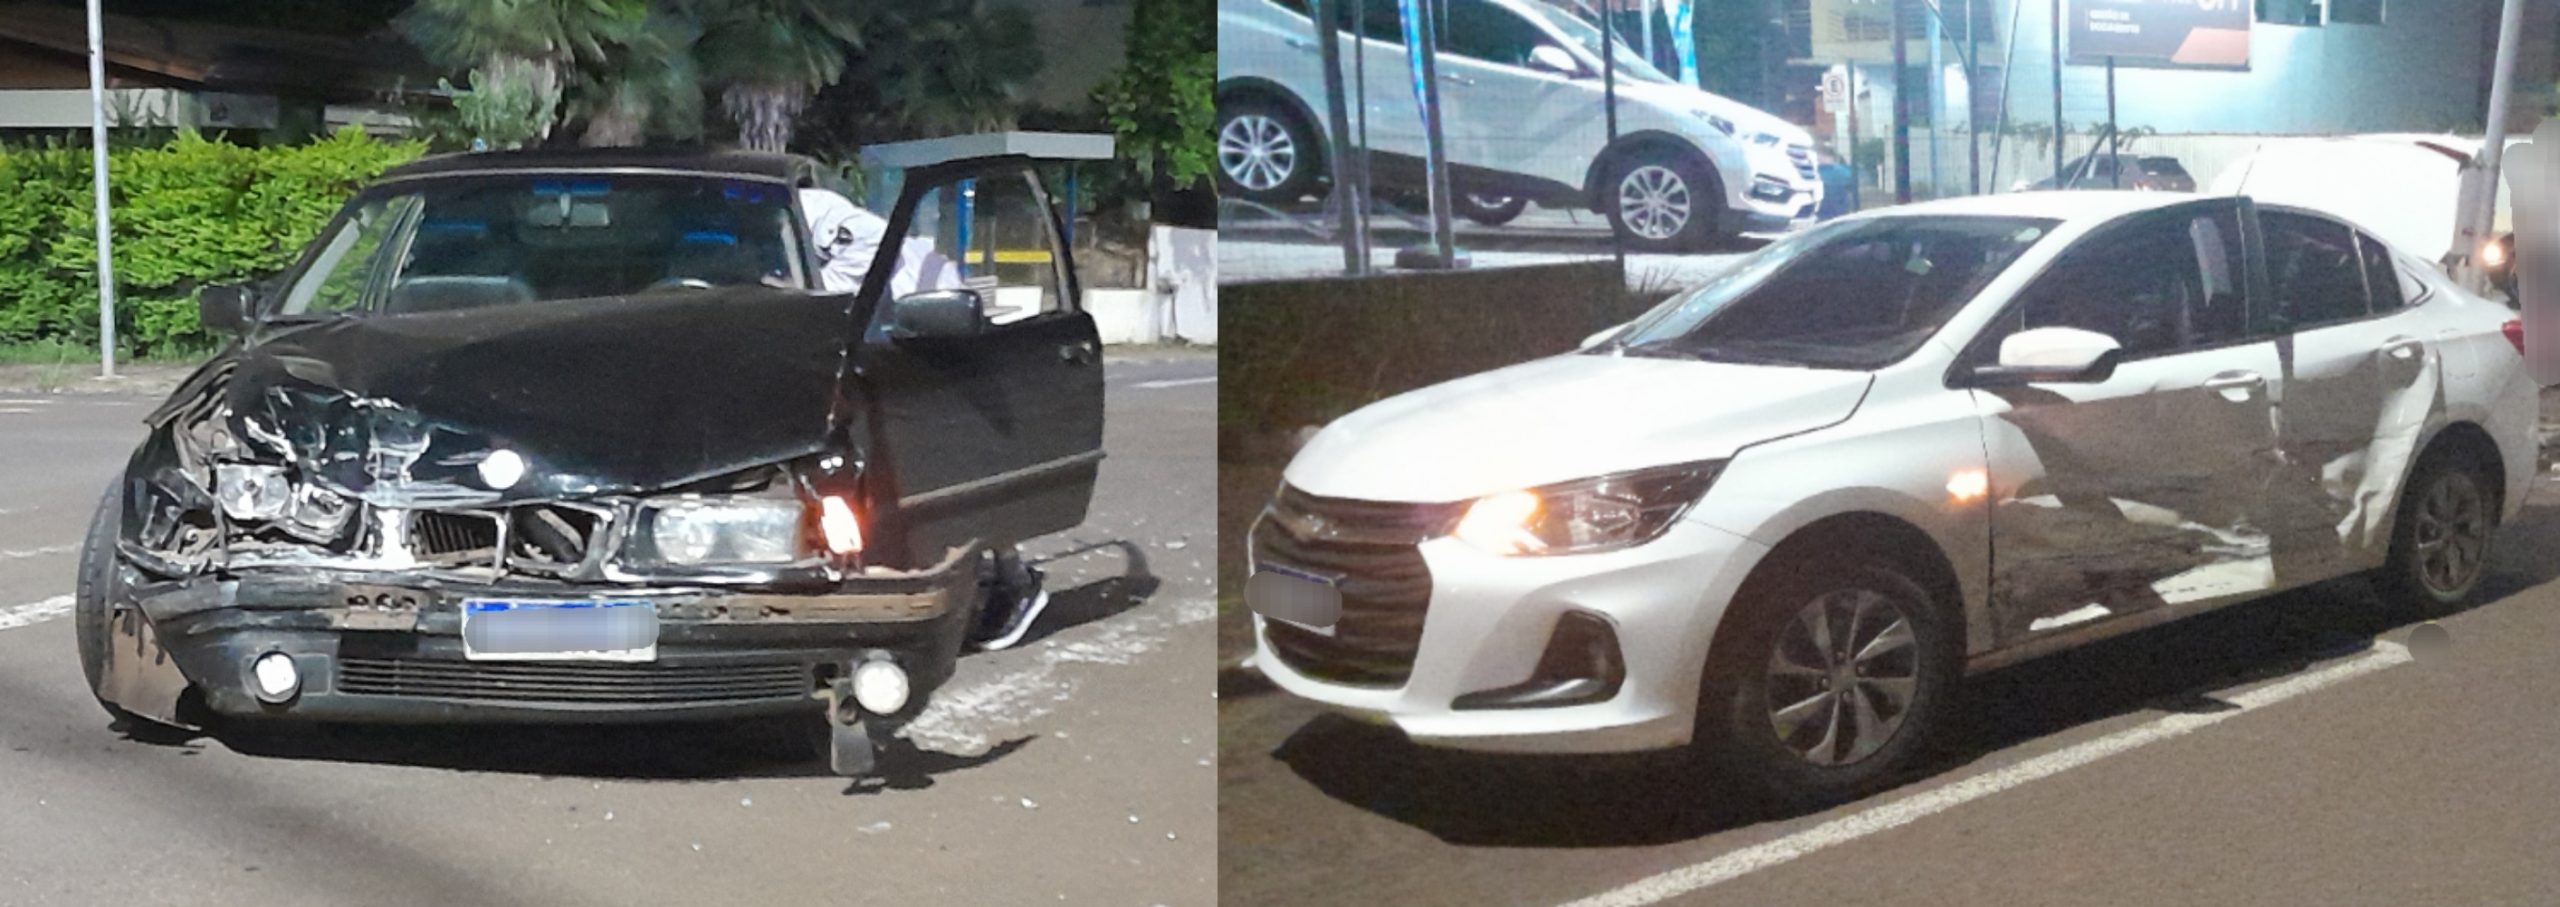 Forte colisão envolve dois carros em Francisco Beltrão